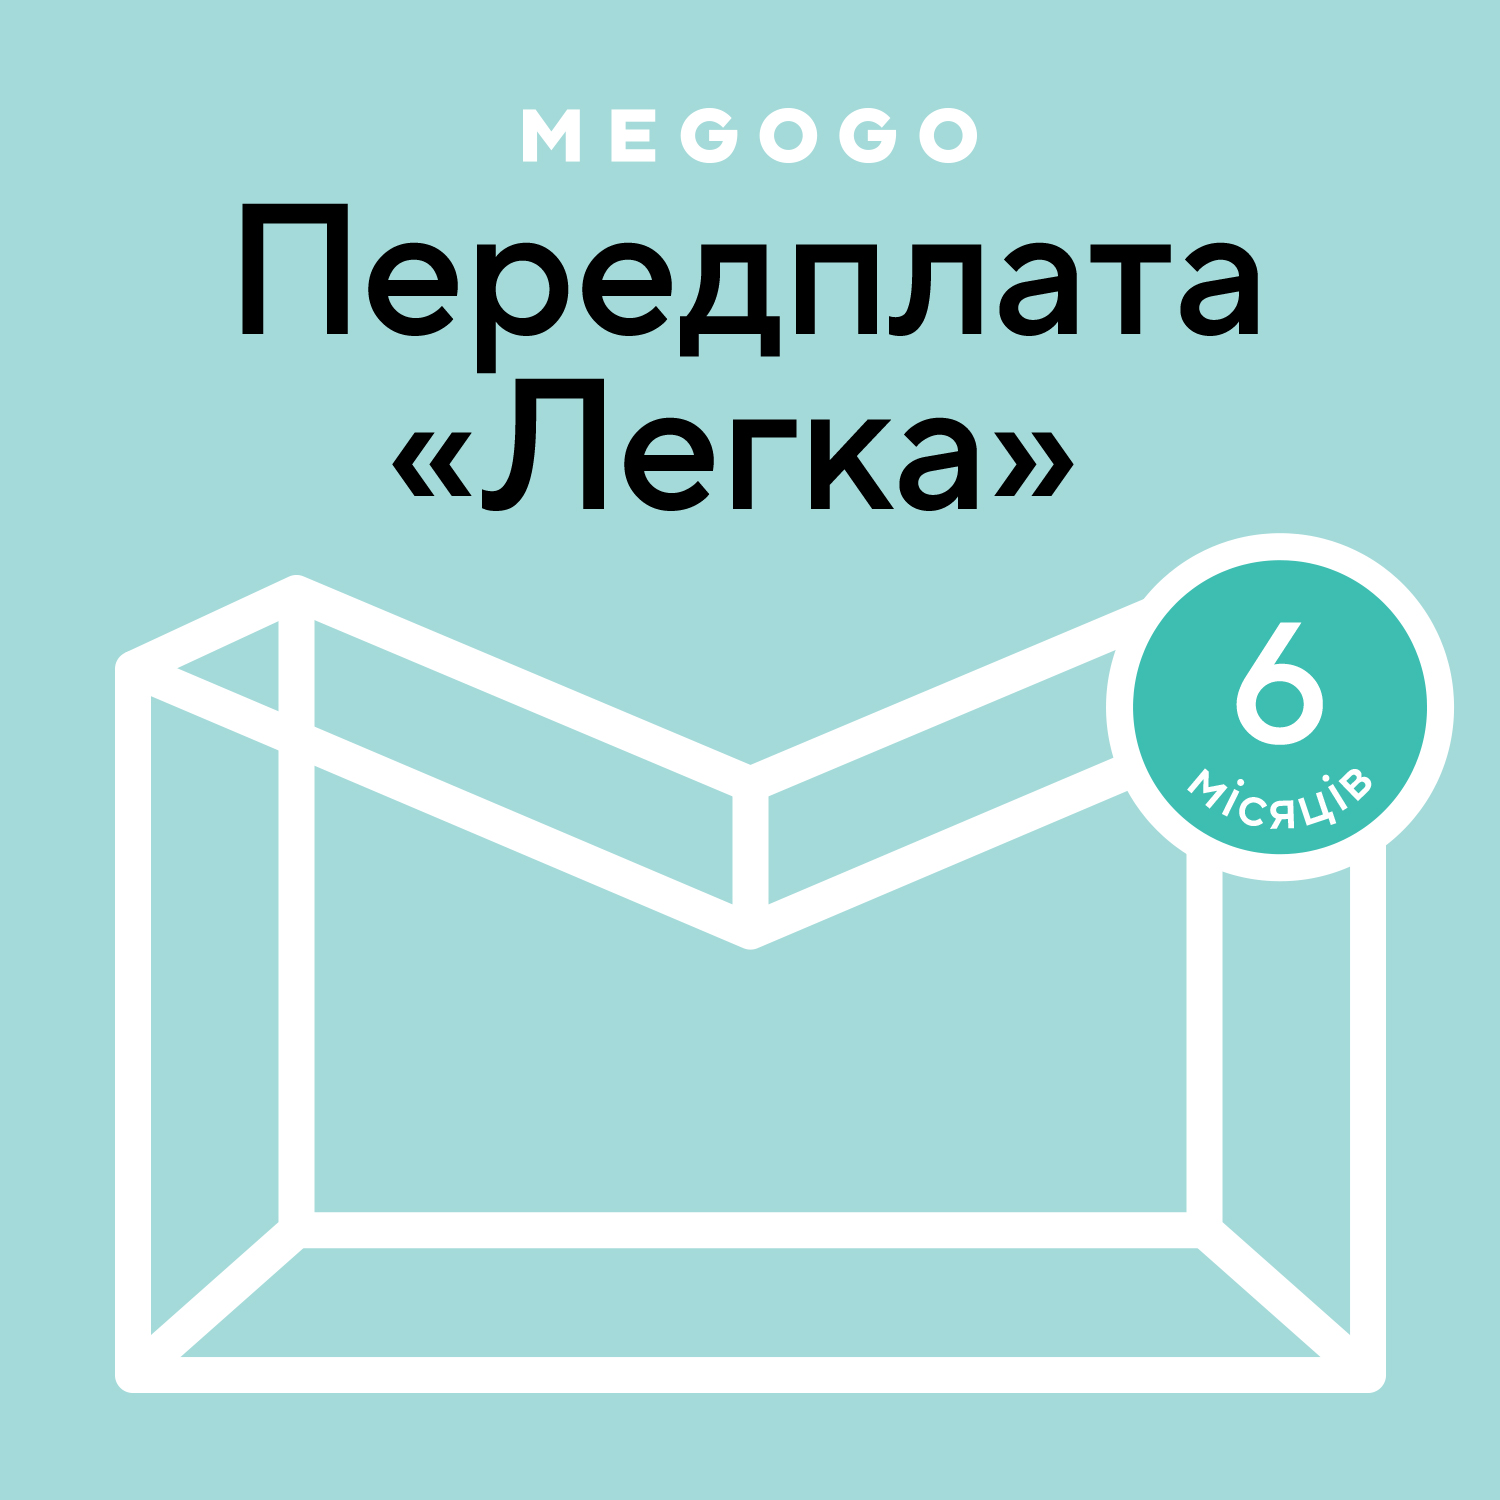 MEGOGO «Кіно і ТБ: Легка» 6 міс в Києві